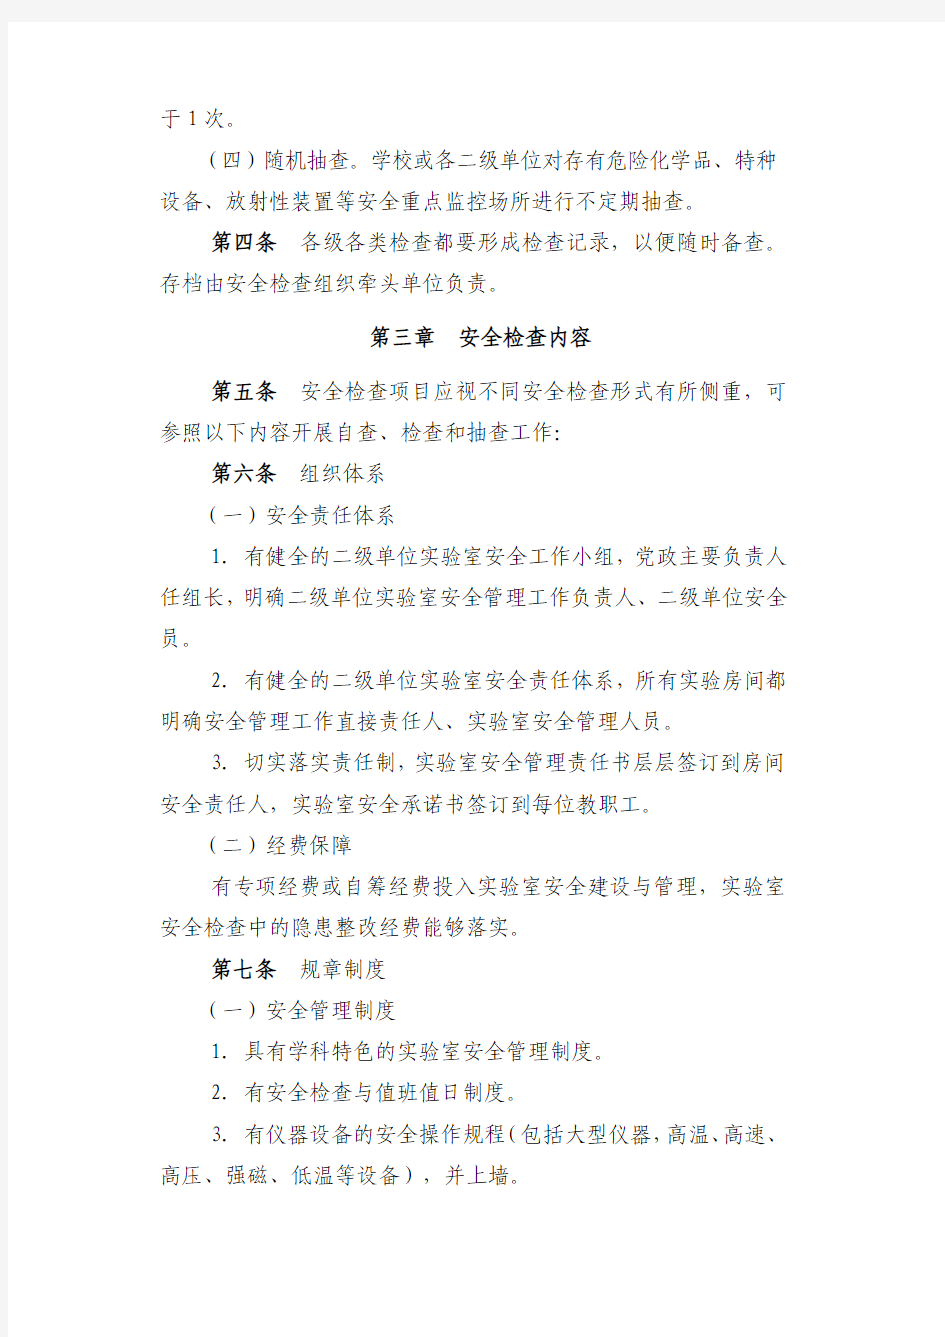 江苏农牧科技职业学院实验室安全检查管理办法(试行)